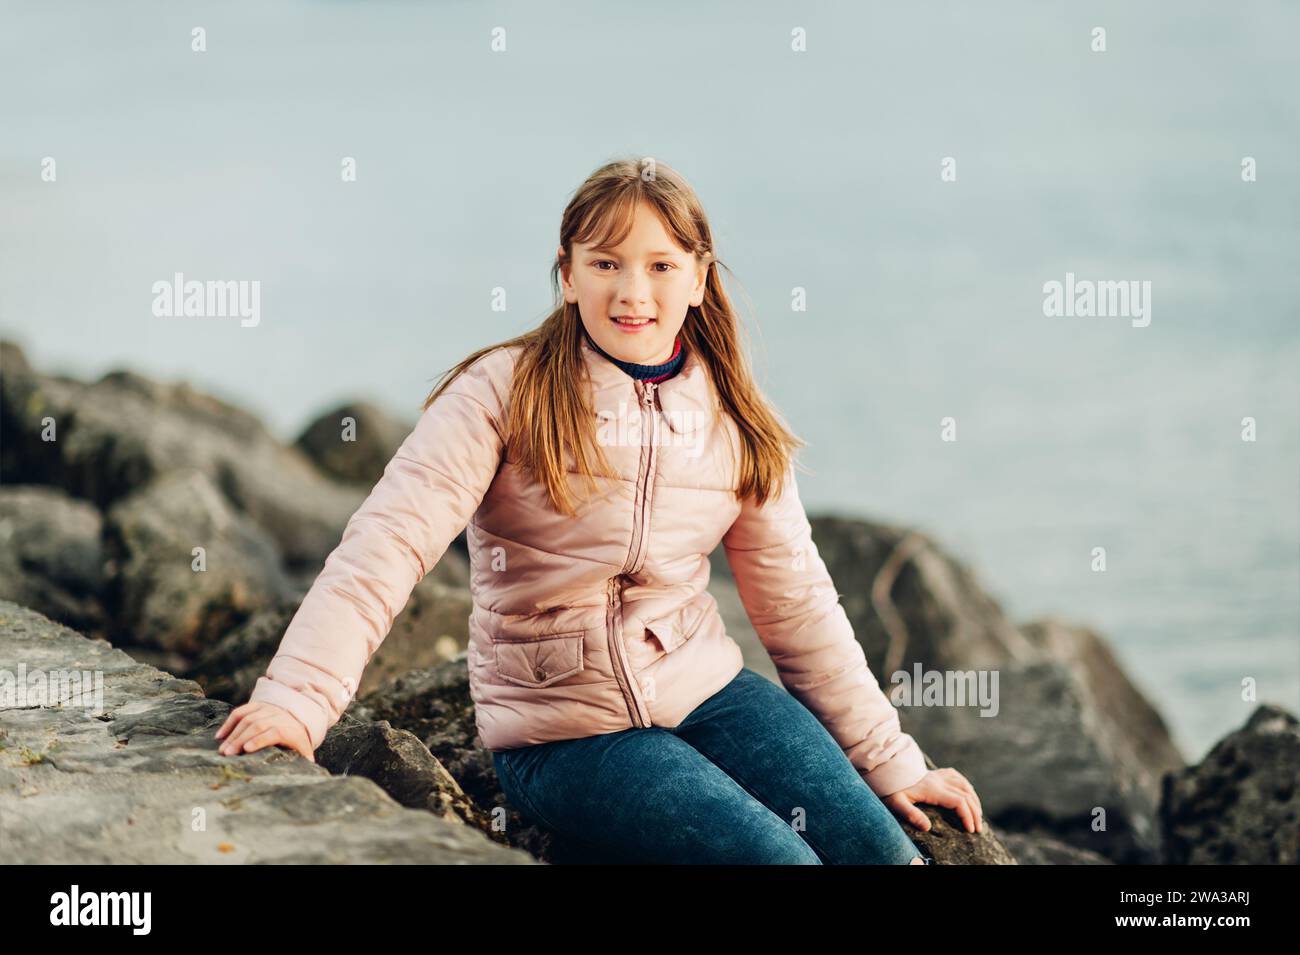 Niedliches, kleines 9-10-jähriges Mädchen, das an einem kalten Tag am See spielt und eine warme, pinkfarbene, gepolsterte Jacke trägt Stockfoto